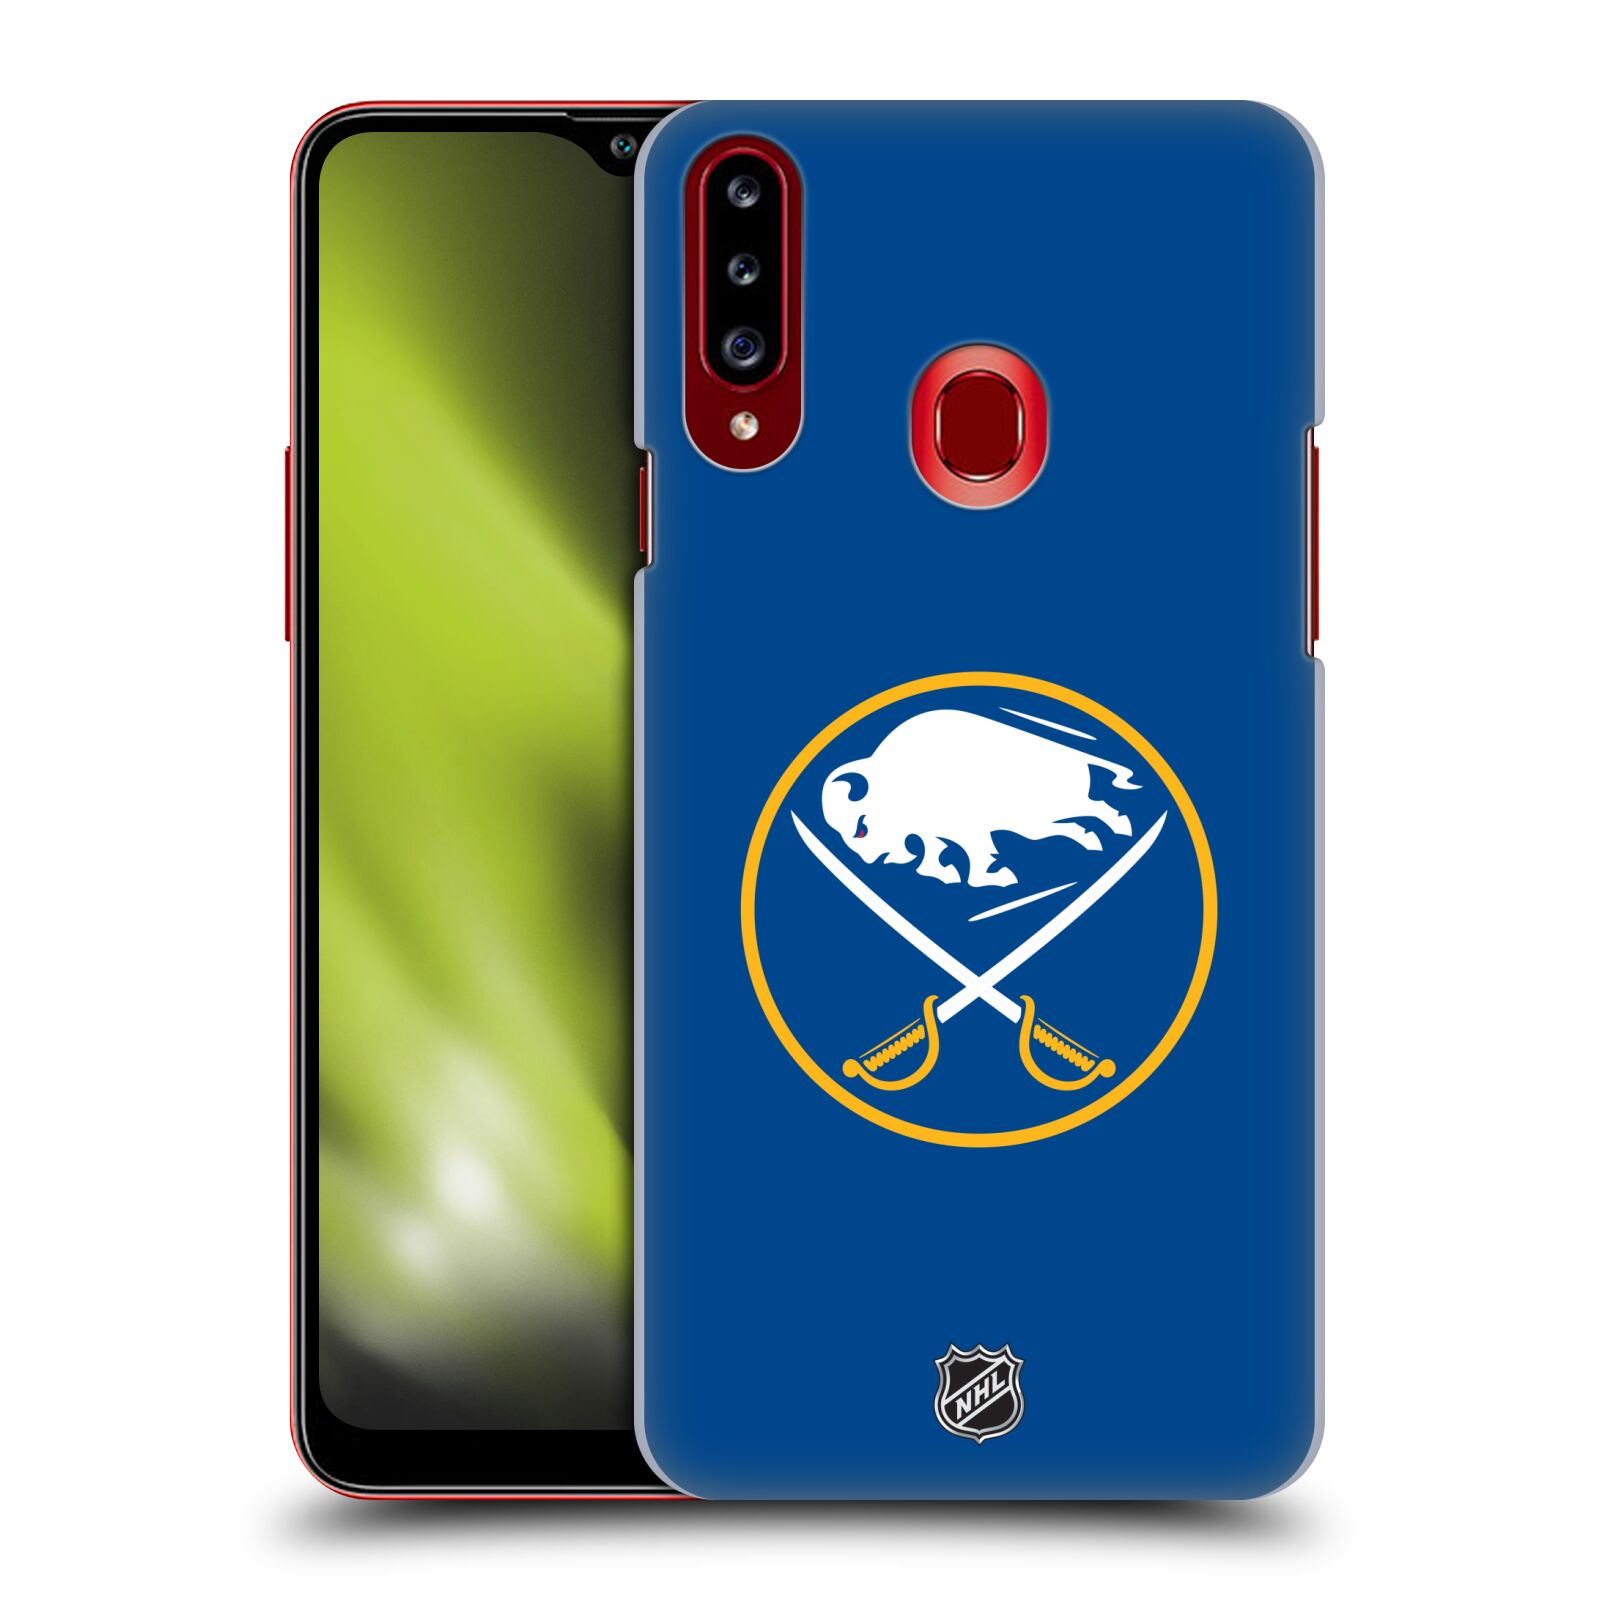 Pouzdro na mobil Samsung Galaxy A20s - HEAD CASE - Hokej NHL - Buffalo Sabres - modré pozadí